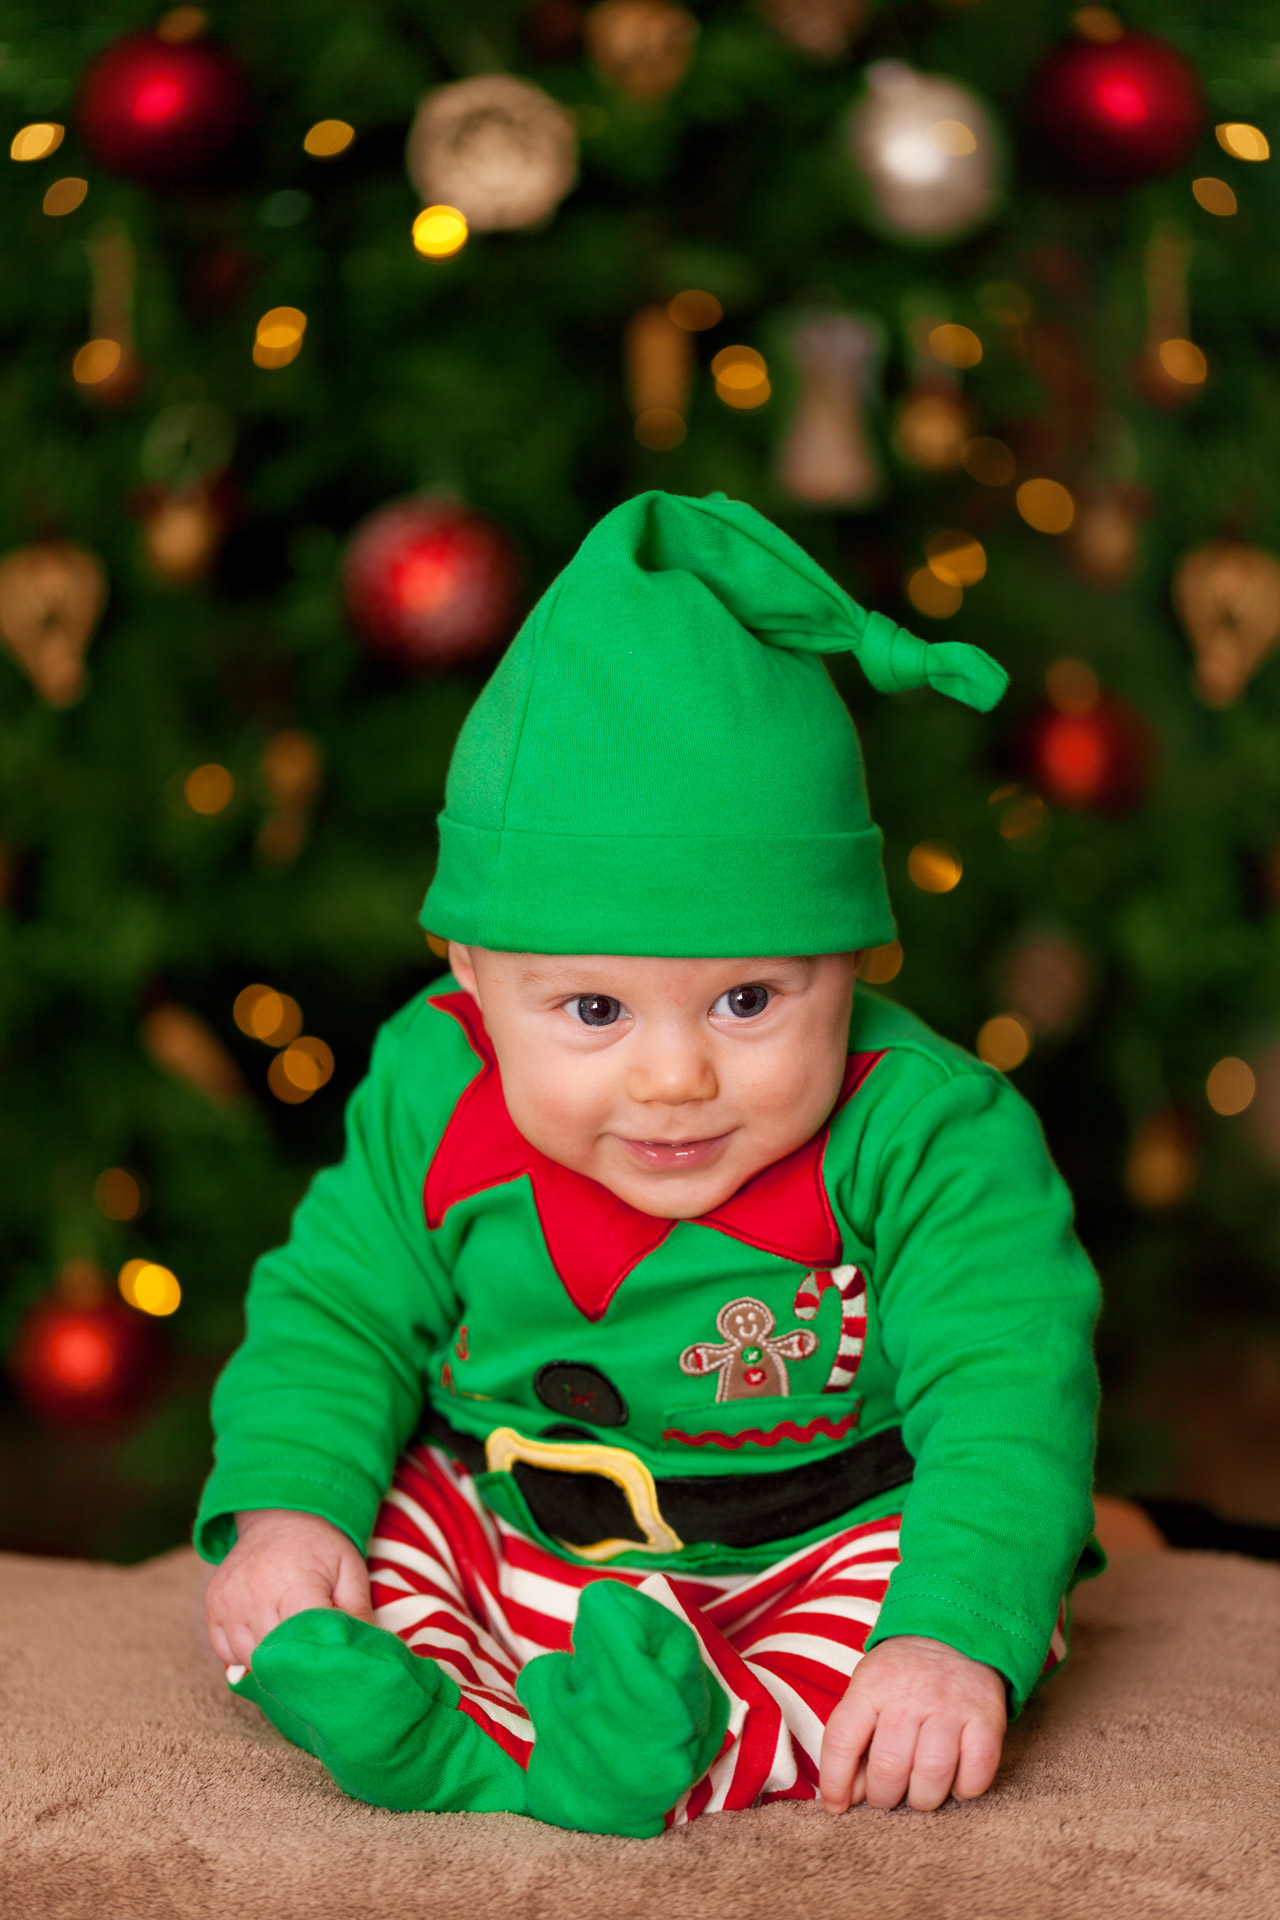 Baby Elf